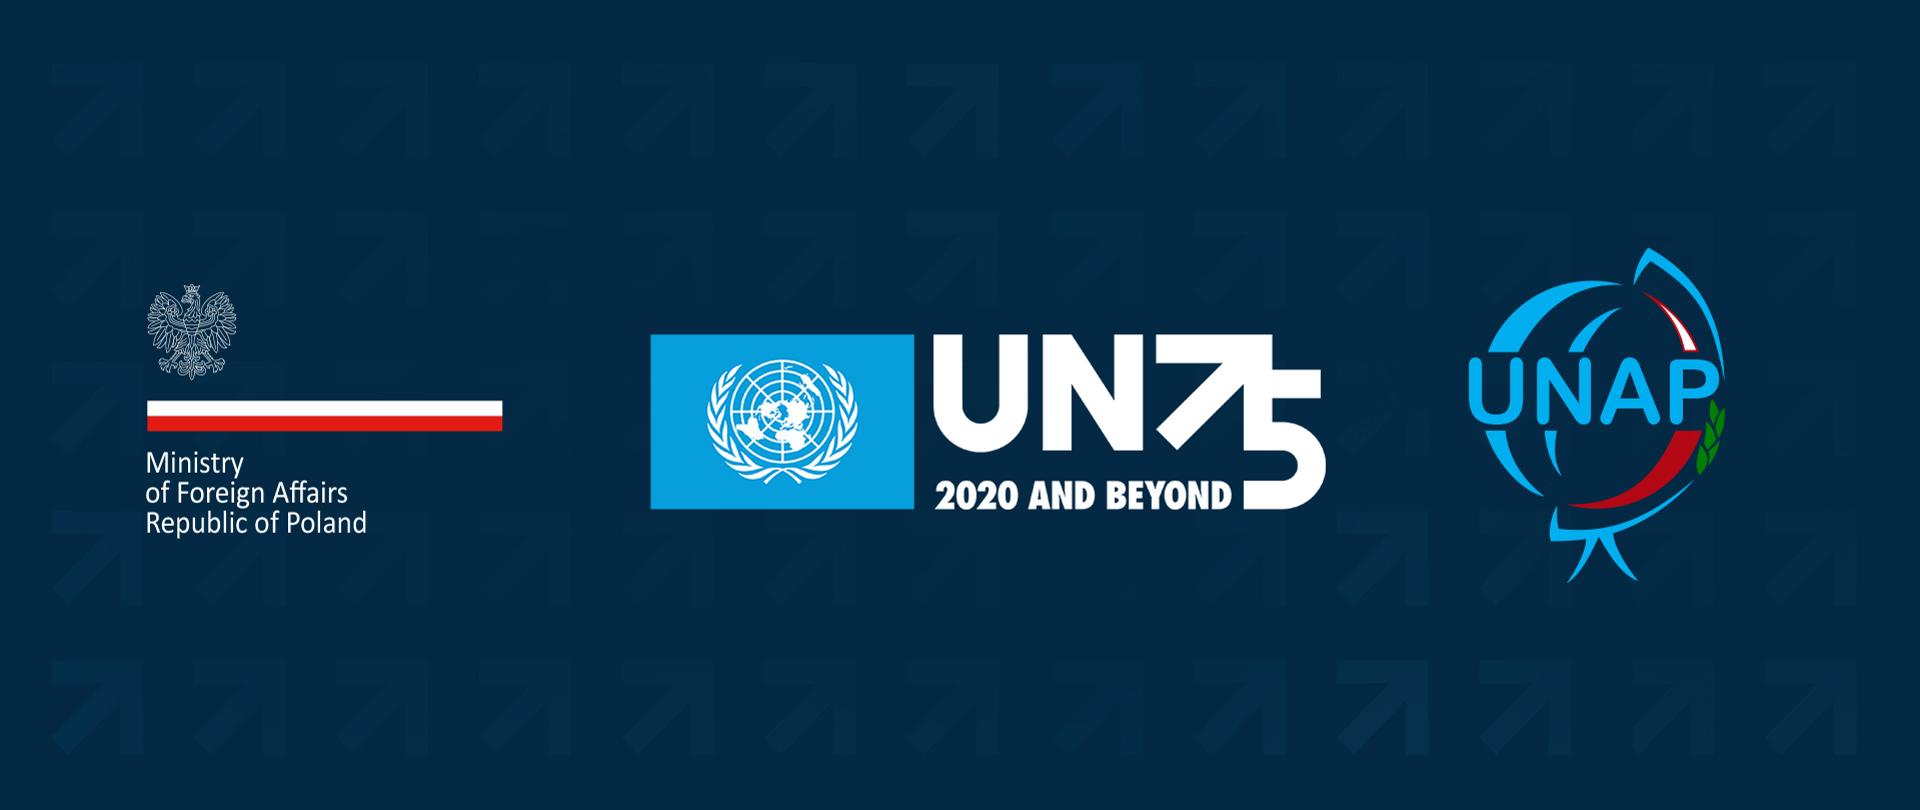 Imagem com fundo azul escuro contém logótipos do MNE da Polónia, das celebrações do 75º aniversário da fundação da ONU e da UNAP.